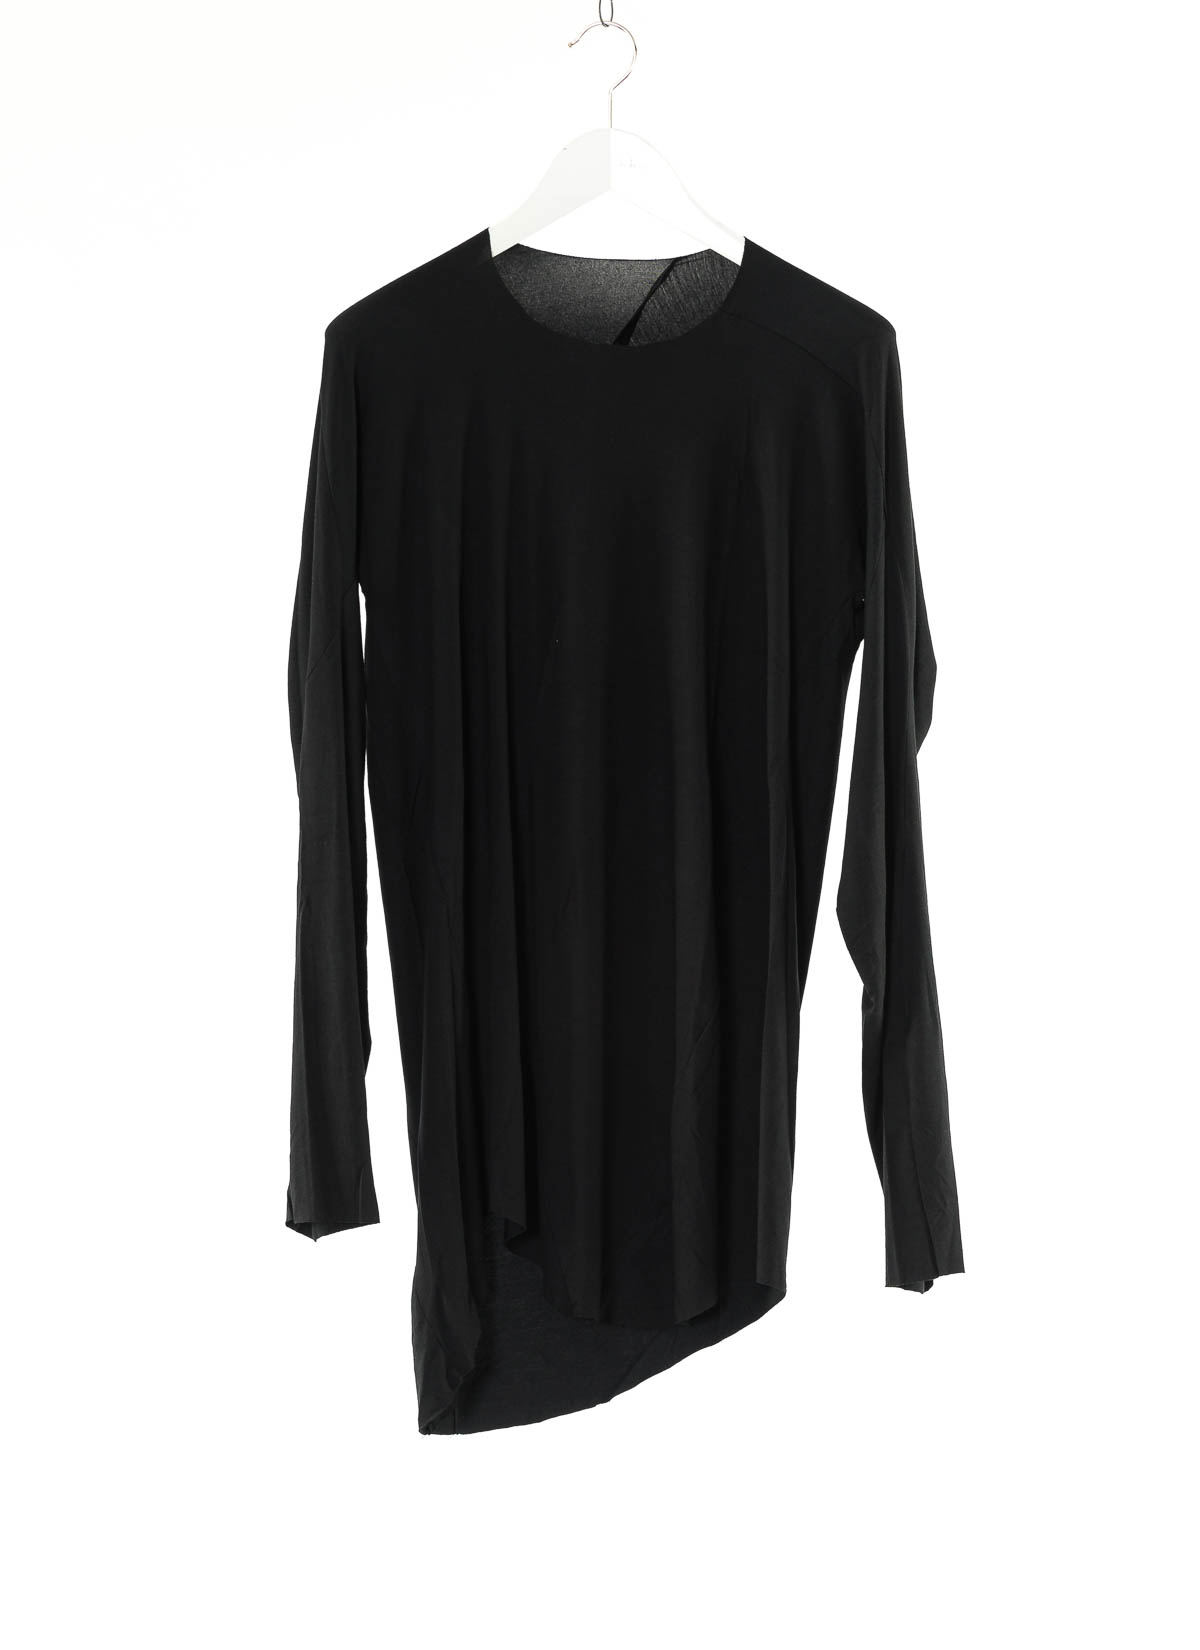 hide-m | LEON EMANUEL BLANCK Distortion LS Curved T-Shirt, black